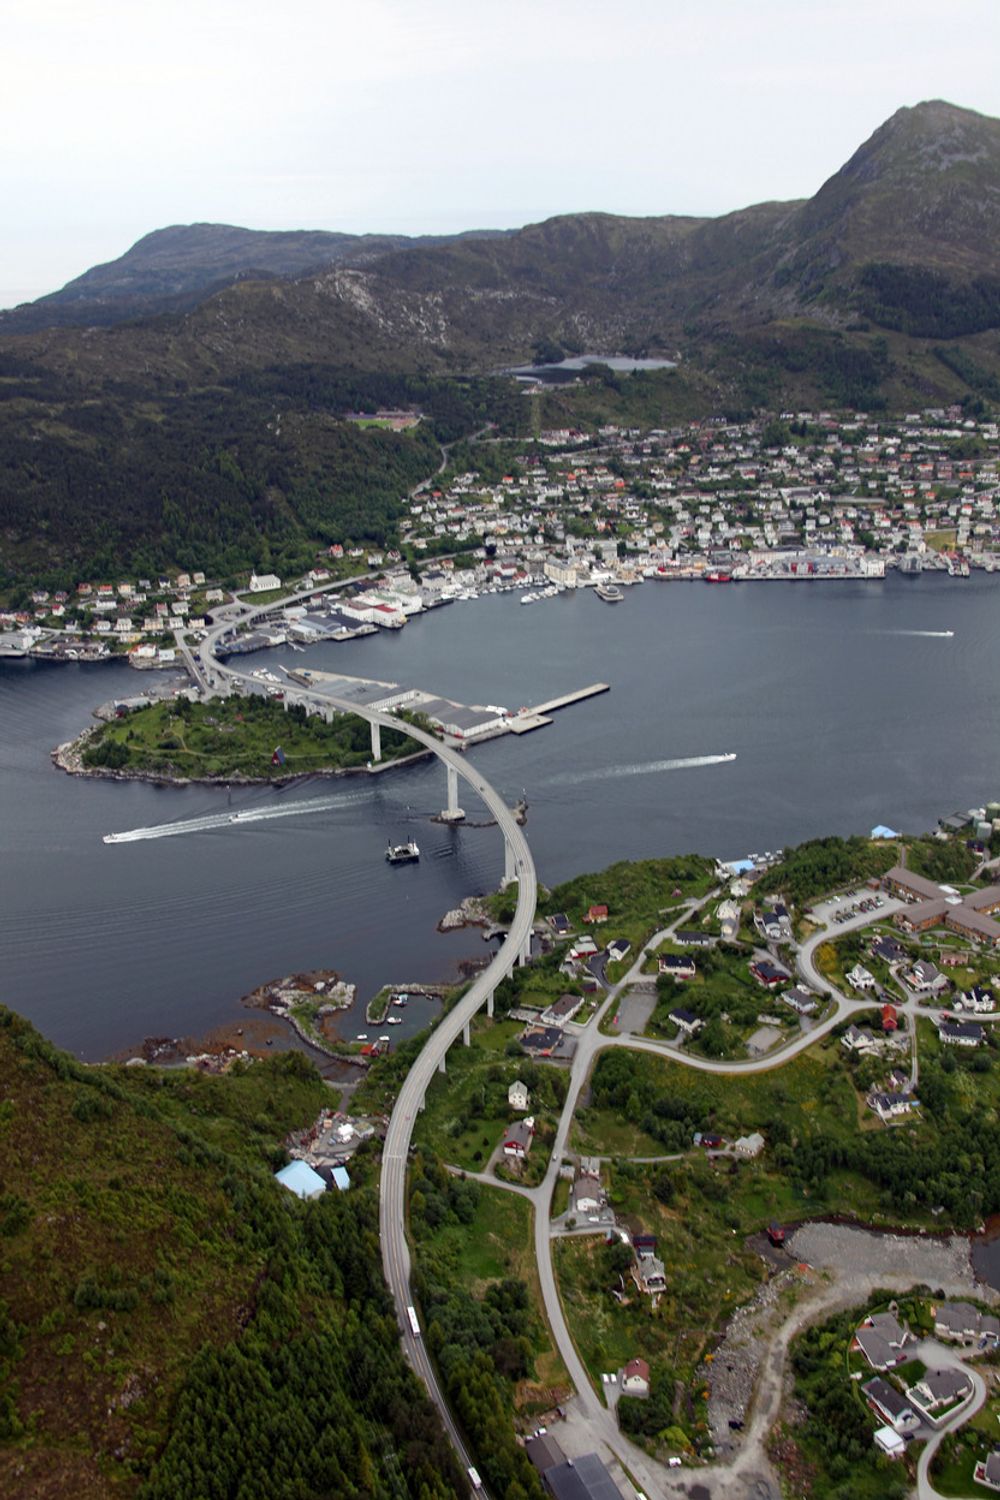 MÅLØYBRUA, SOGN OG FJORDANE: - Broprosjektet må sies å være et enestående samarbeid mellom lokale politikere og vegstyresmaktene, og broen svinger seg som en kjempestor S fra fiskerisenteret Måløy over Måløysundet til fastlandet. Når man kommer over broen, har man den mest fantastiske utsikten man kan tenke seg både nord- og sørøver, samt over hele byen Måløy som ligger omkranset av majestetiske fjell og nydelig fjord.